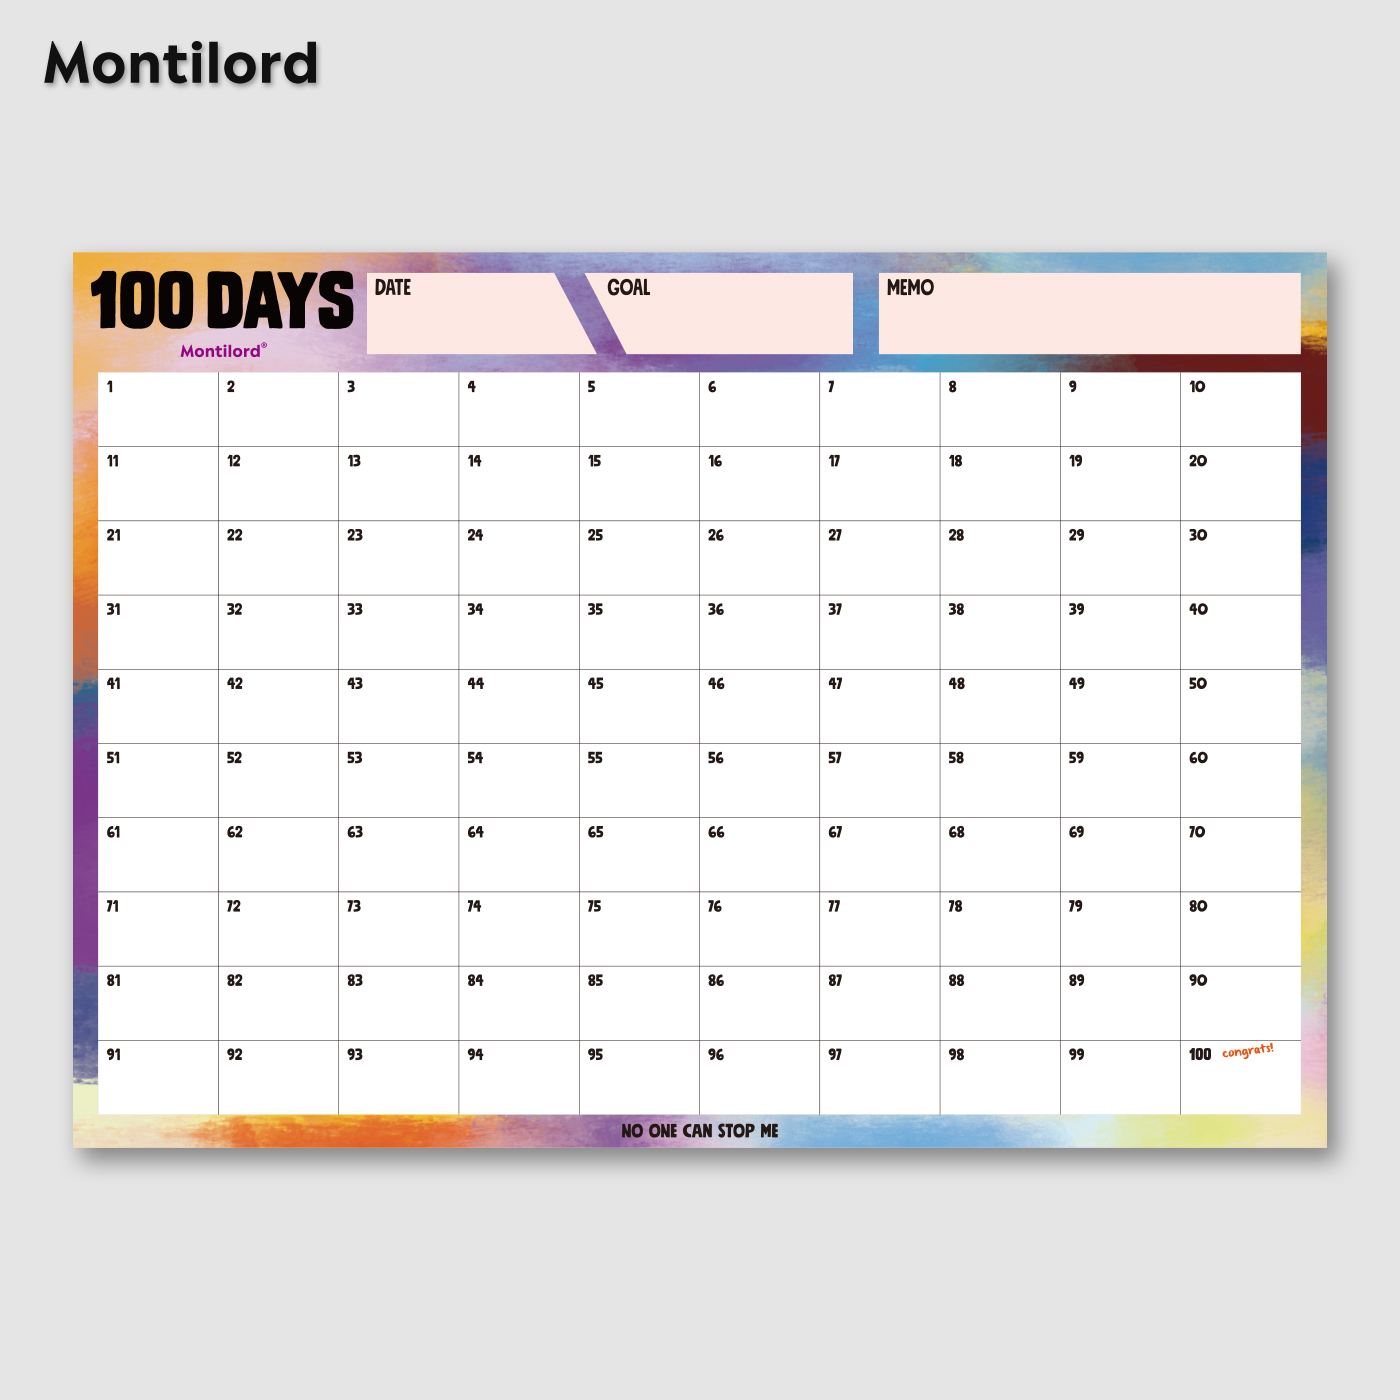 『Montilord』100天计划表 单墙贴考研减肥日程表习惯养成周记录表倒计时时间表作息月自律百日打卡表